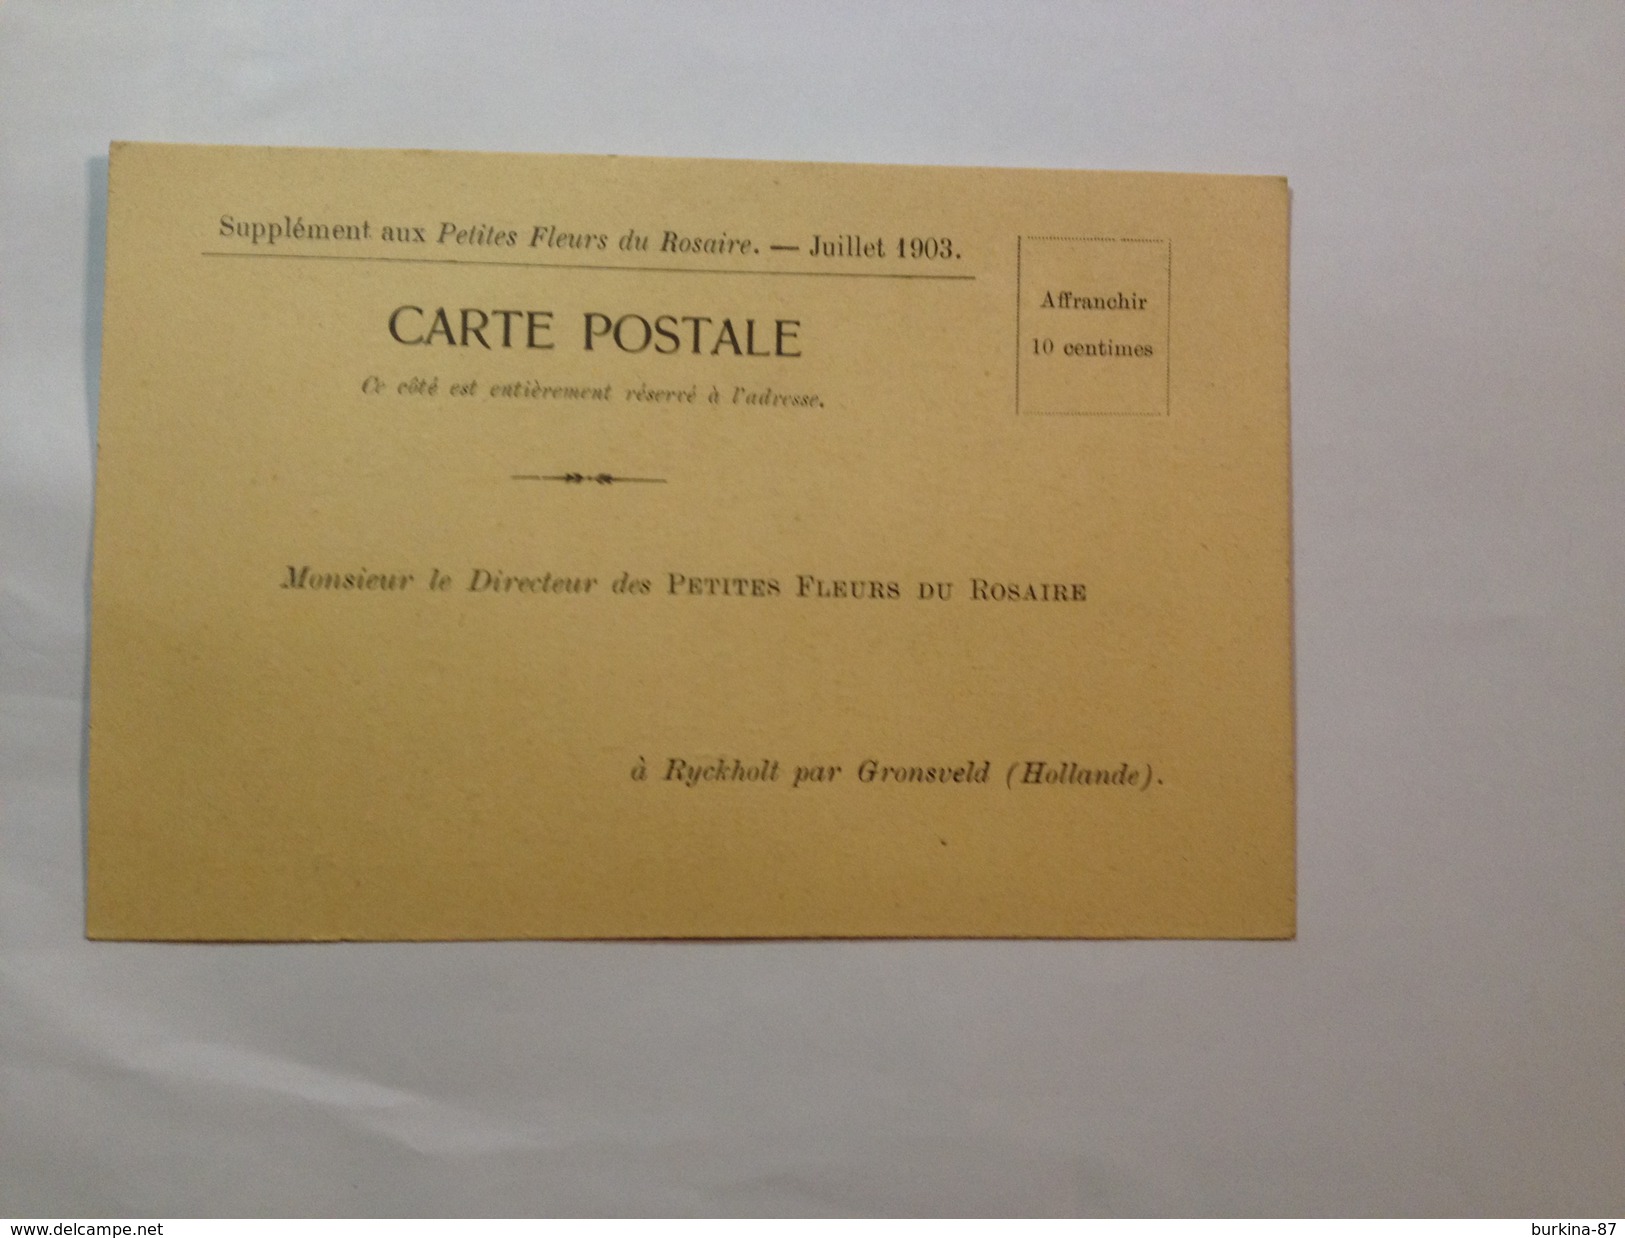 CARTE POSTALE, LES PETITES FLEURS DU ROSAIRE, 1903, BULLETIN ABONNEMENT VIERGE - French